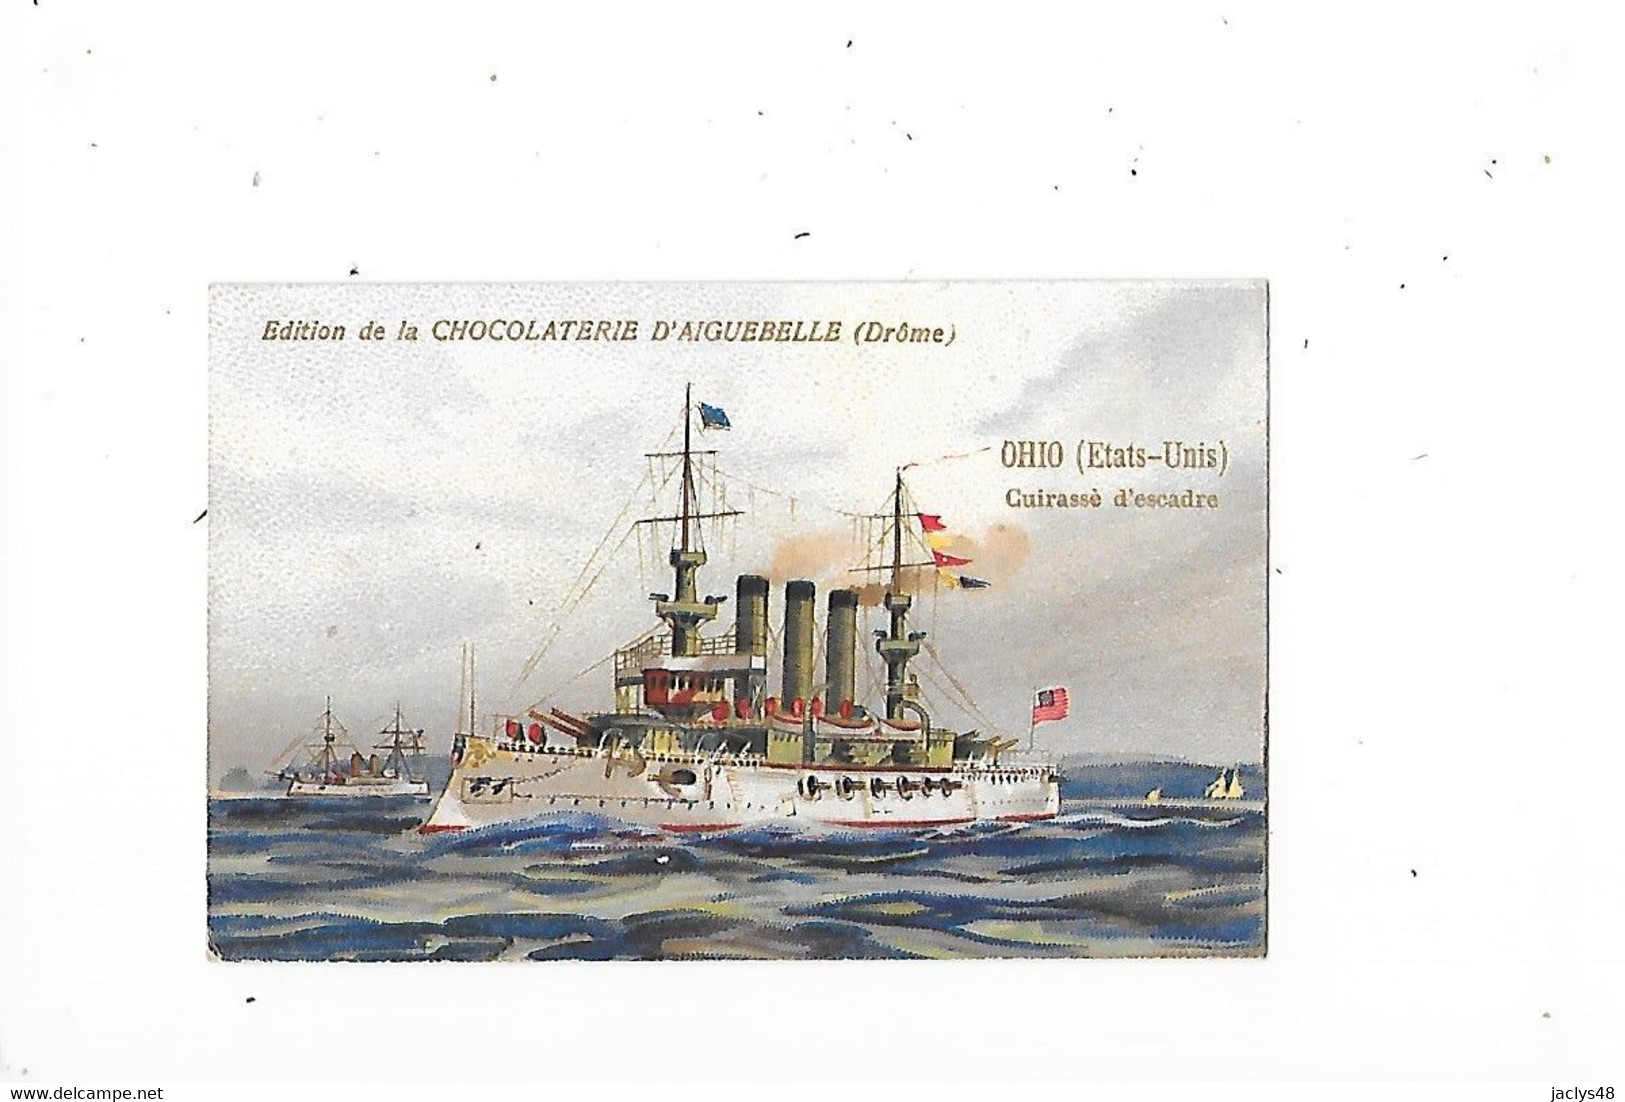 OHIO (Etats-Unis) - Cuirassé D'escadre   - Edition De La Chocolaterie D'Aiguebelle - Format 9,6 X 6,4 - - Boats